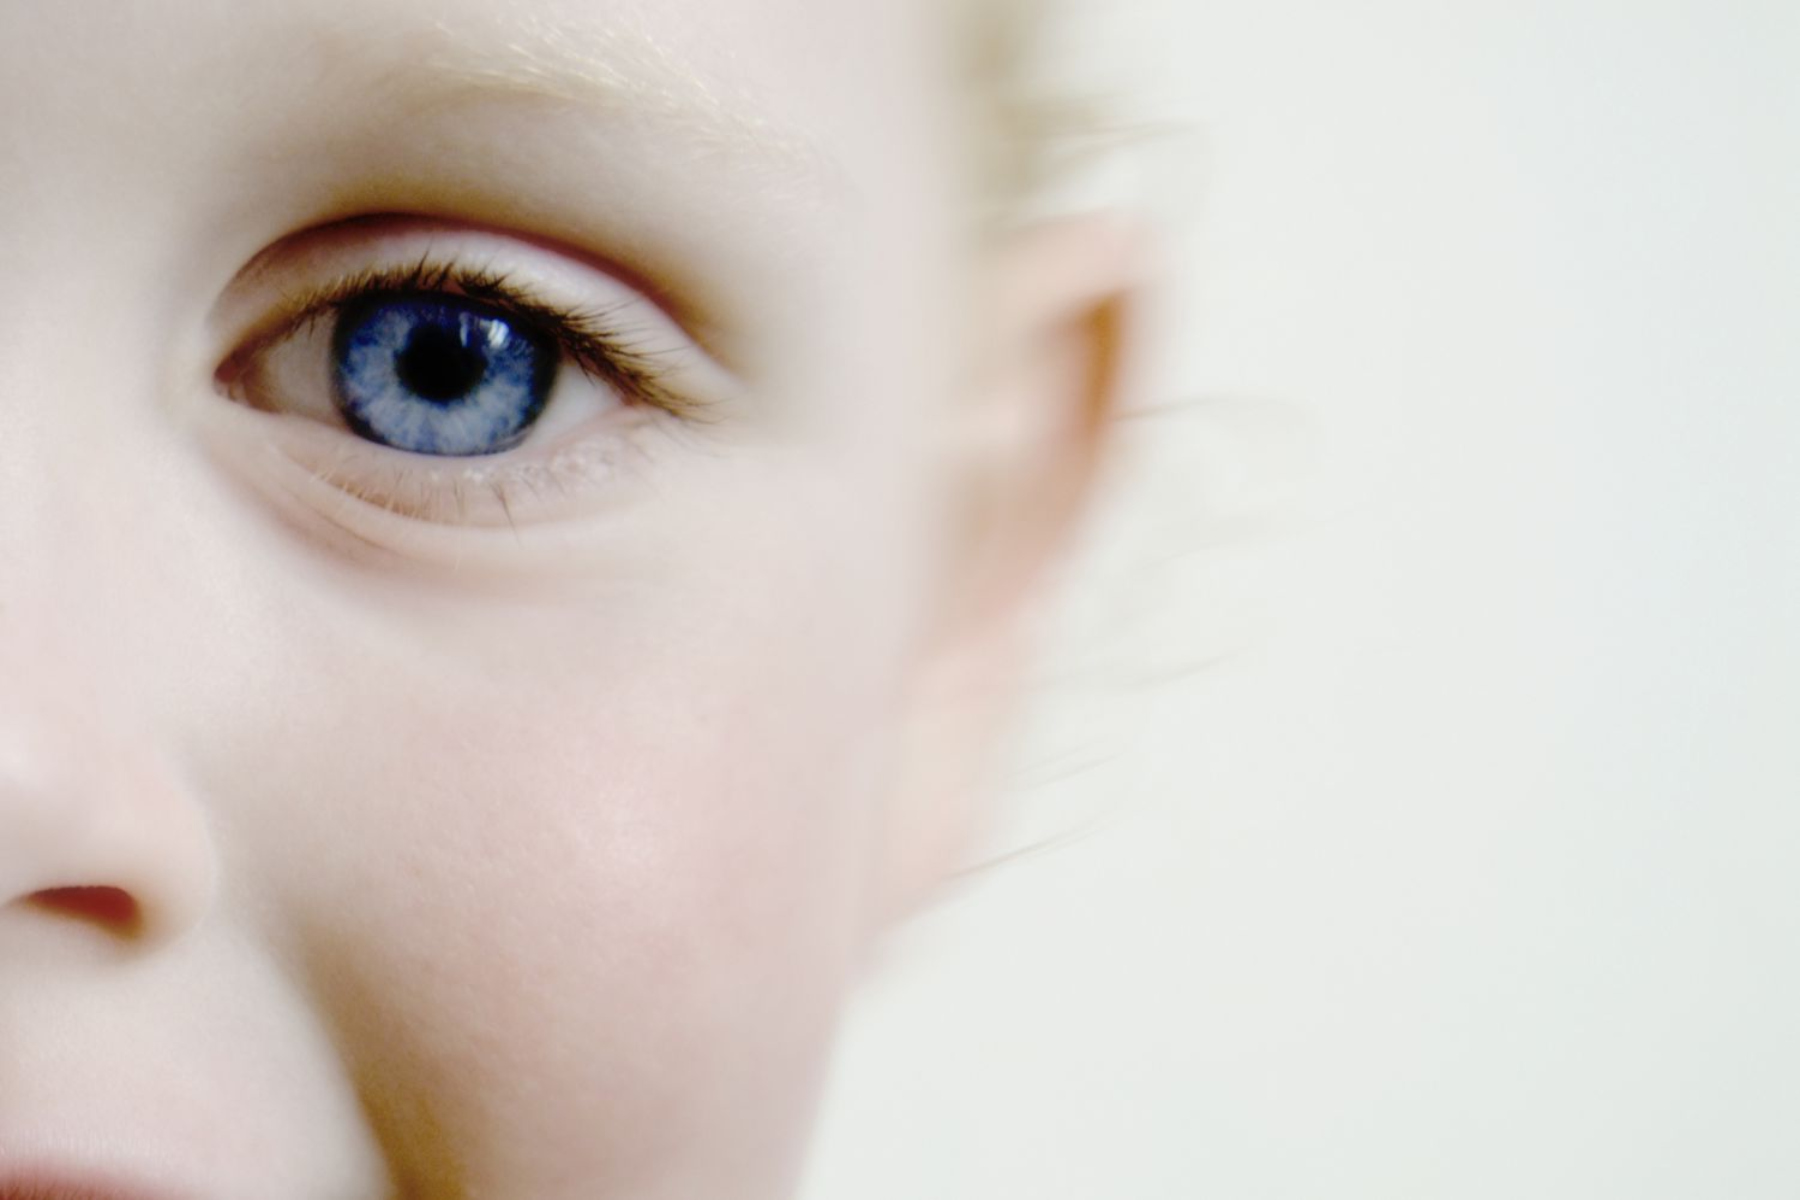 ΔΑΦ: Πώς η εξέταση της όρασης μπορεί να βοηθήσει στην διάγνωση του αυτισμού;